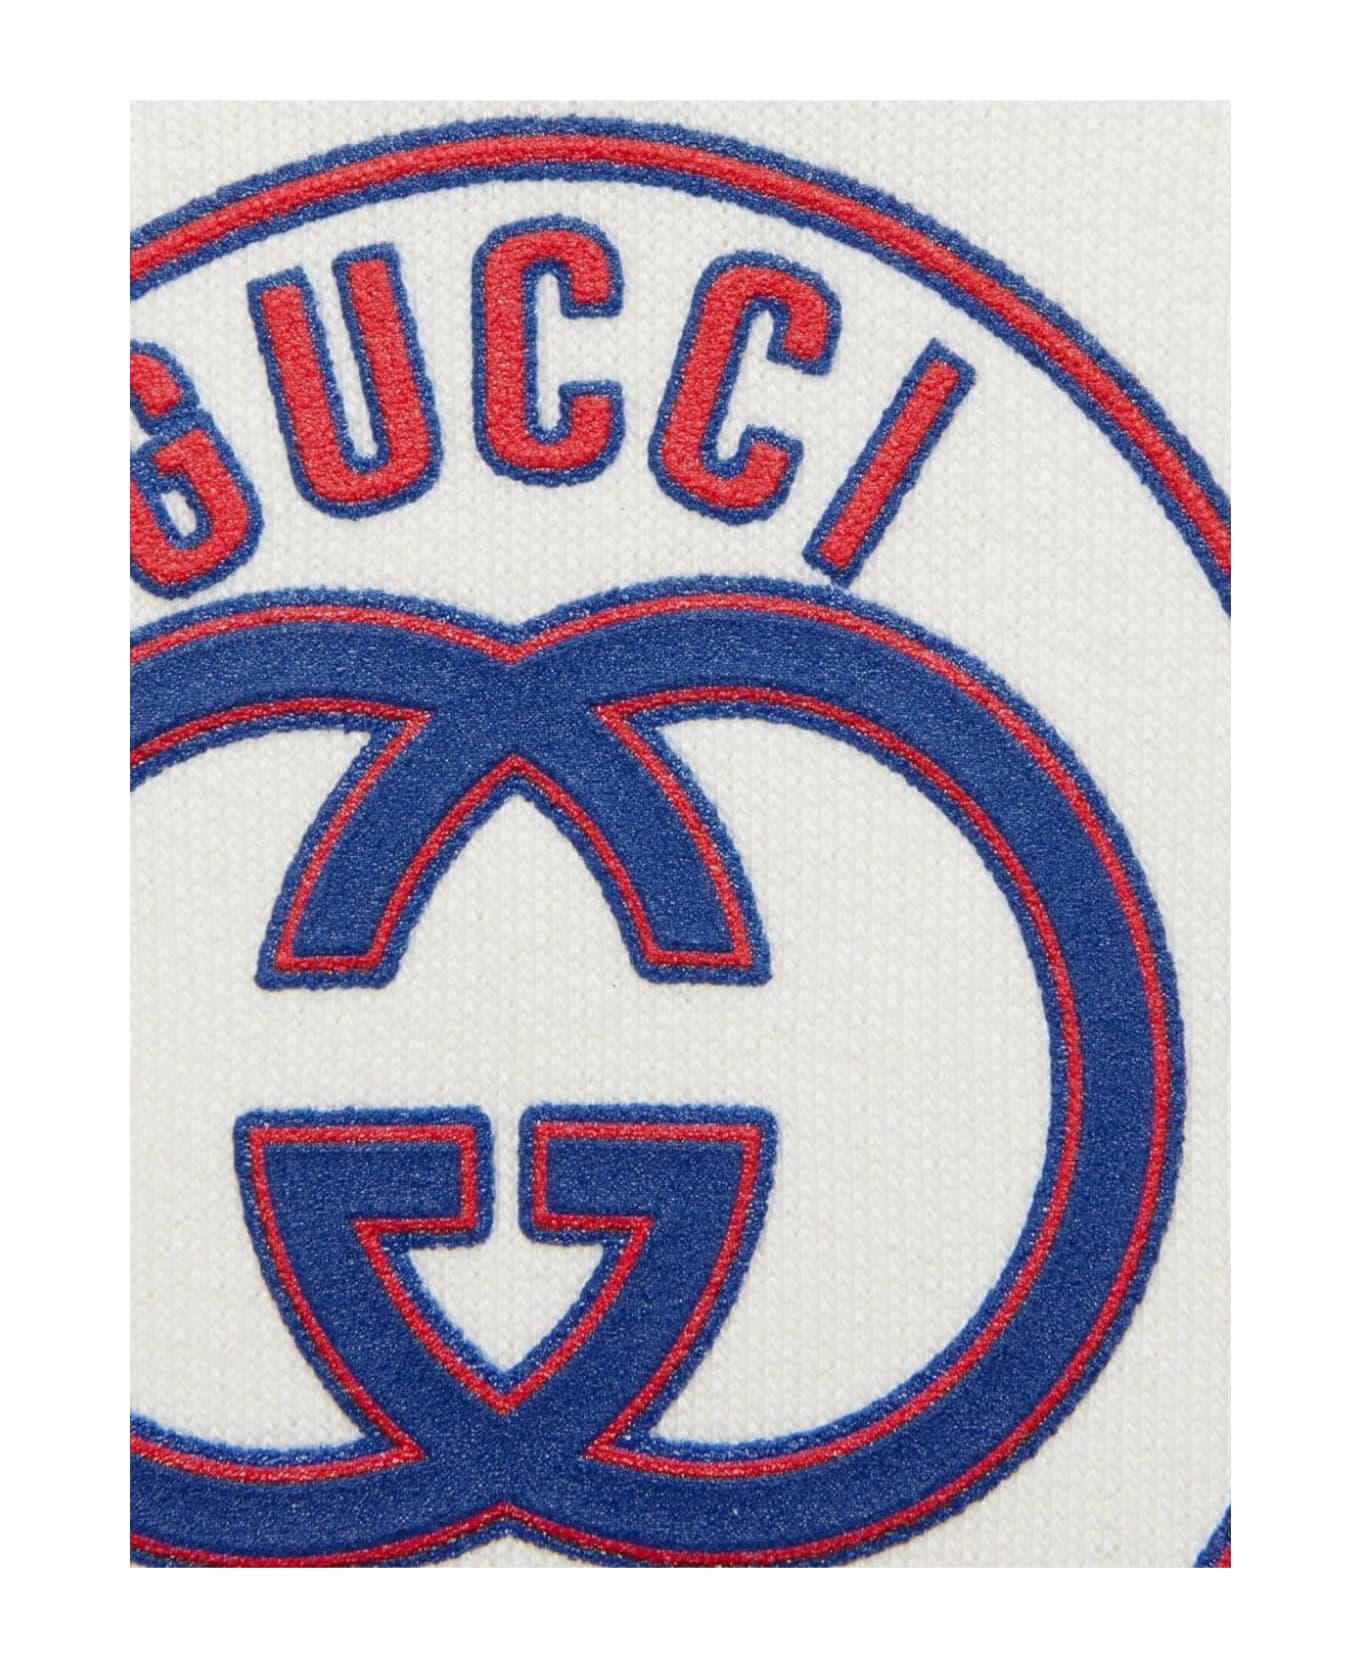 Gucci Kids Sweaters White - White ニットウェア＆スウェットシャツ